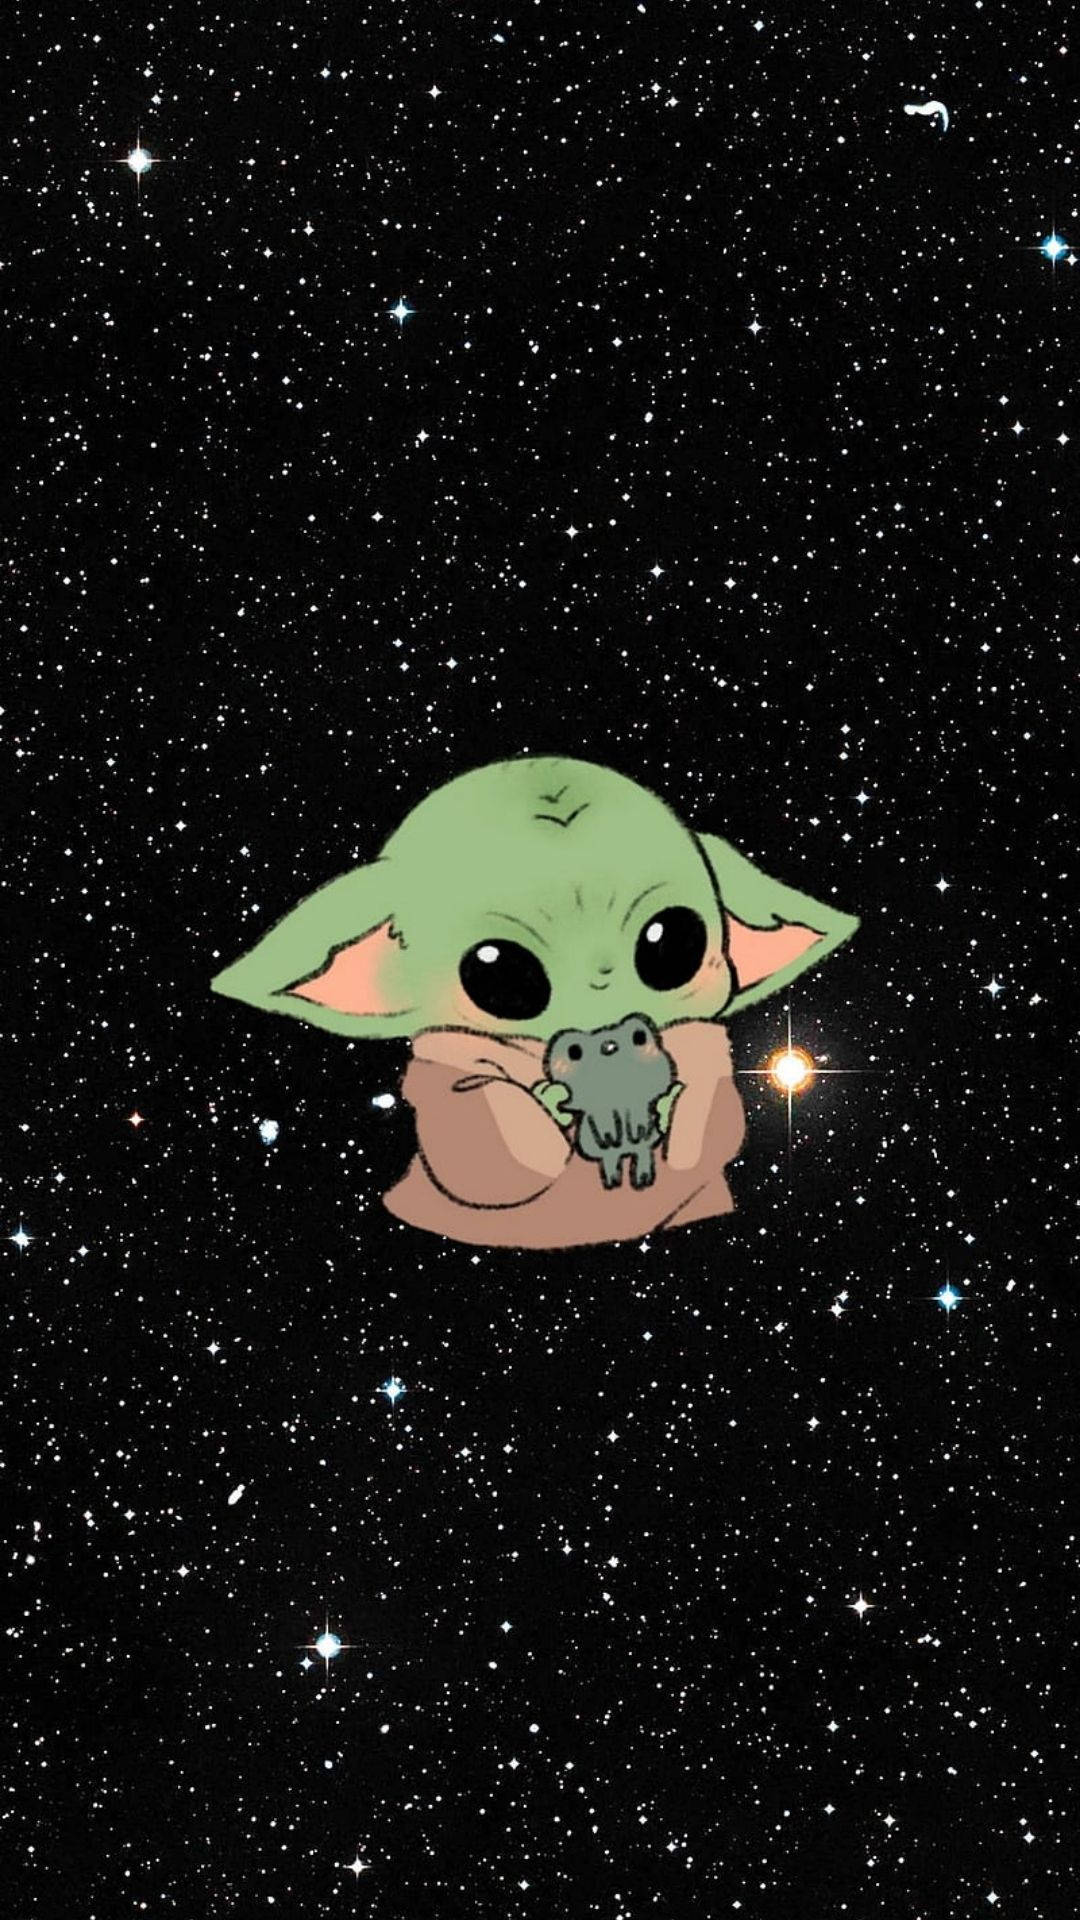 Tải hình nền Baby Yoda động vật thiên hà: Mang một khung cảnh đẹp lung linh của động vật thiên hà vào điện thoại của bạn với những hình nền Baby Yoda tuyệt đẹp. Bạn có thể tùy chọn theo sở thích của mình và chắc chắn sẽ không phải thất vọng với chất lượng của các hình nền này.